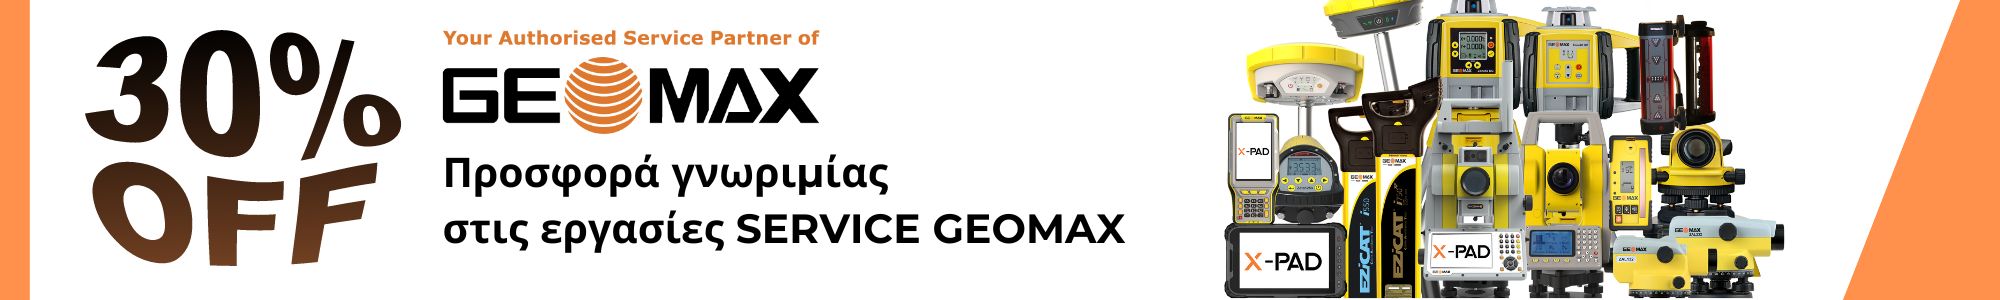 Προσφορά Γνωριμίας: Έκπτωση 30% στις εργασίες service του Geomax γεωδαιτικού σας σταθμού